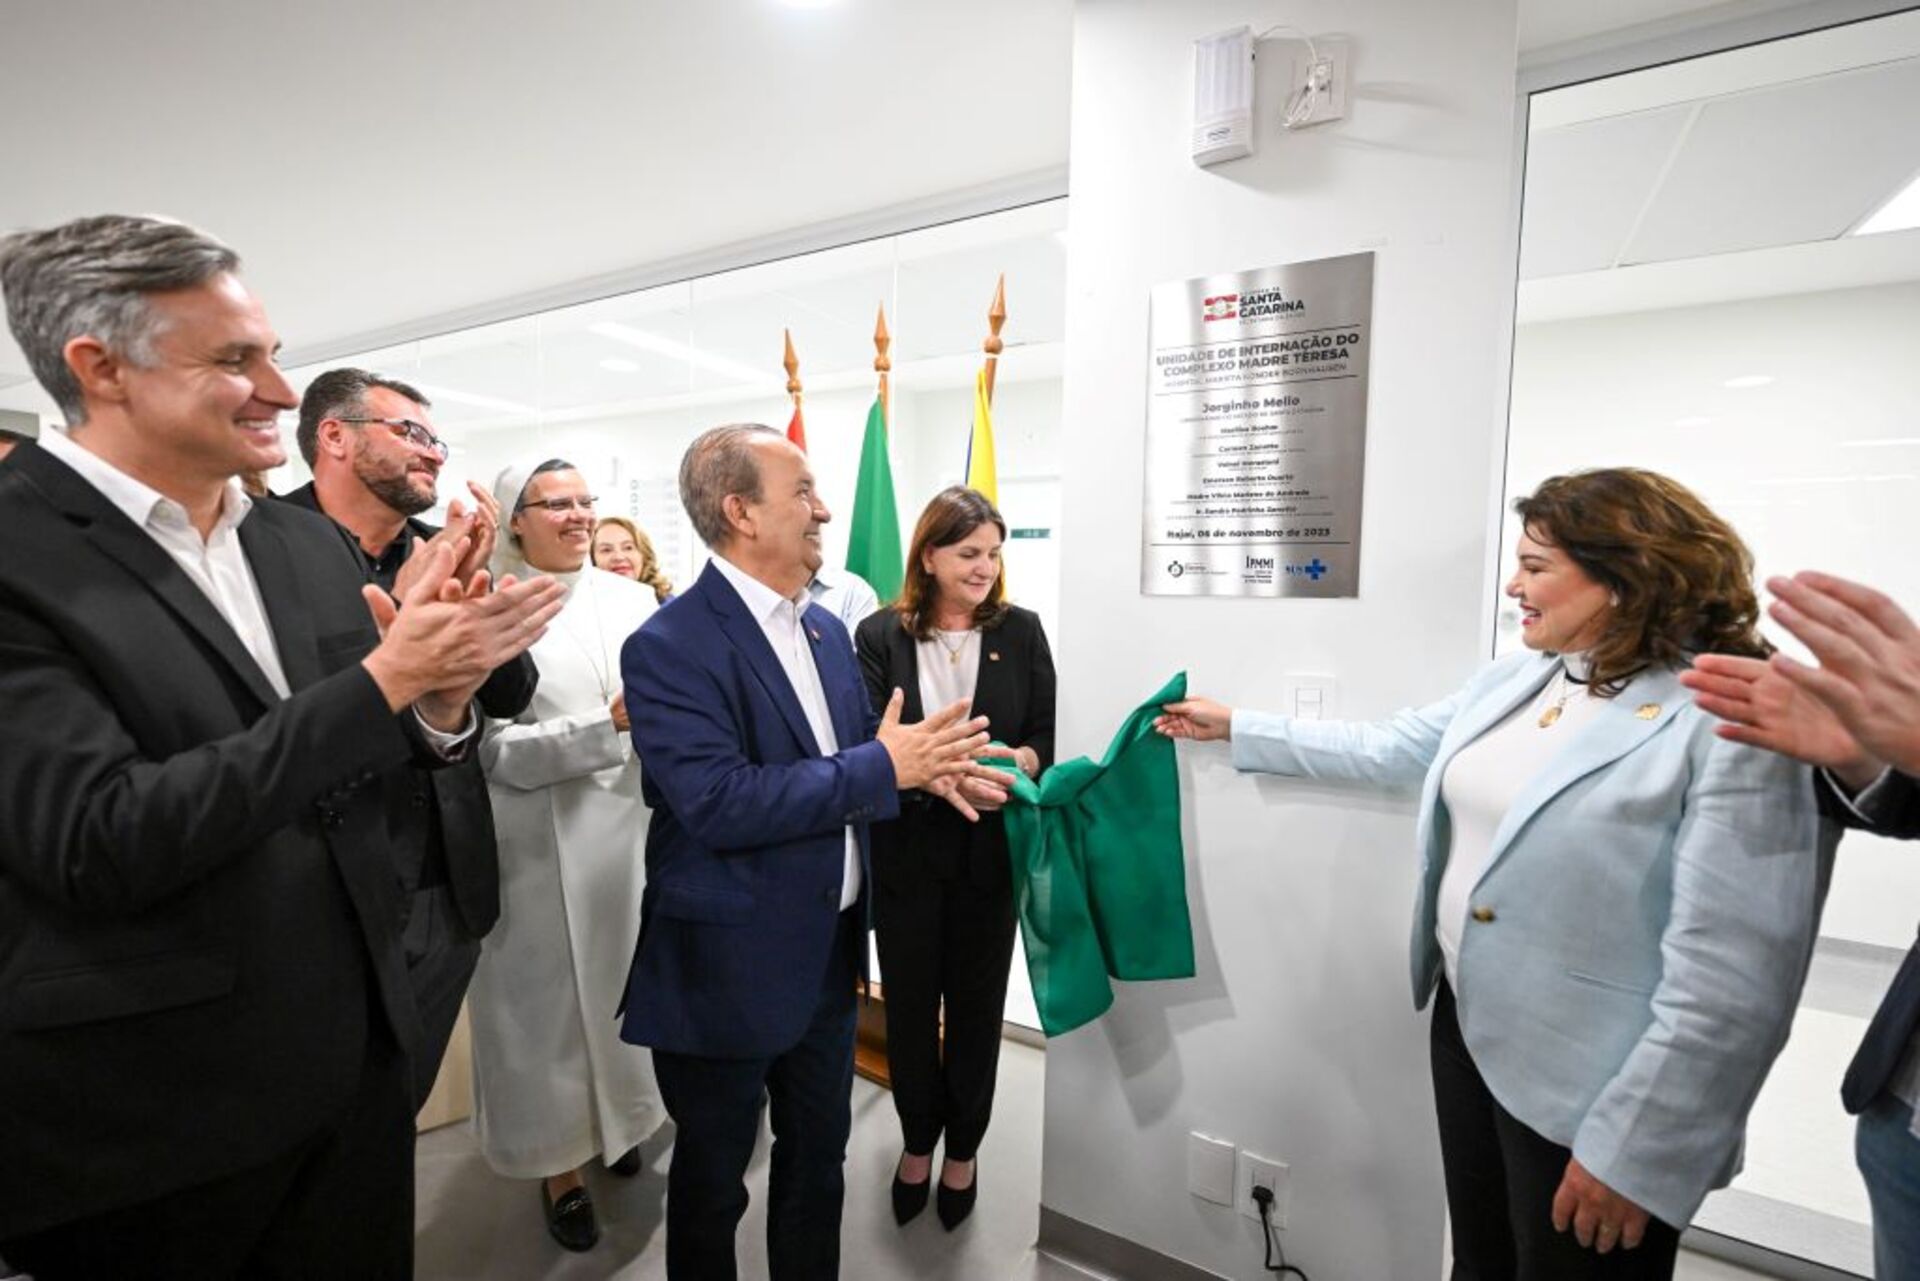 Estado inaugura 41 leitos de internação no Hospital Marieta Konder Bornhausen, em Itajaí 